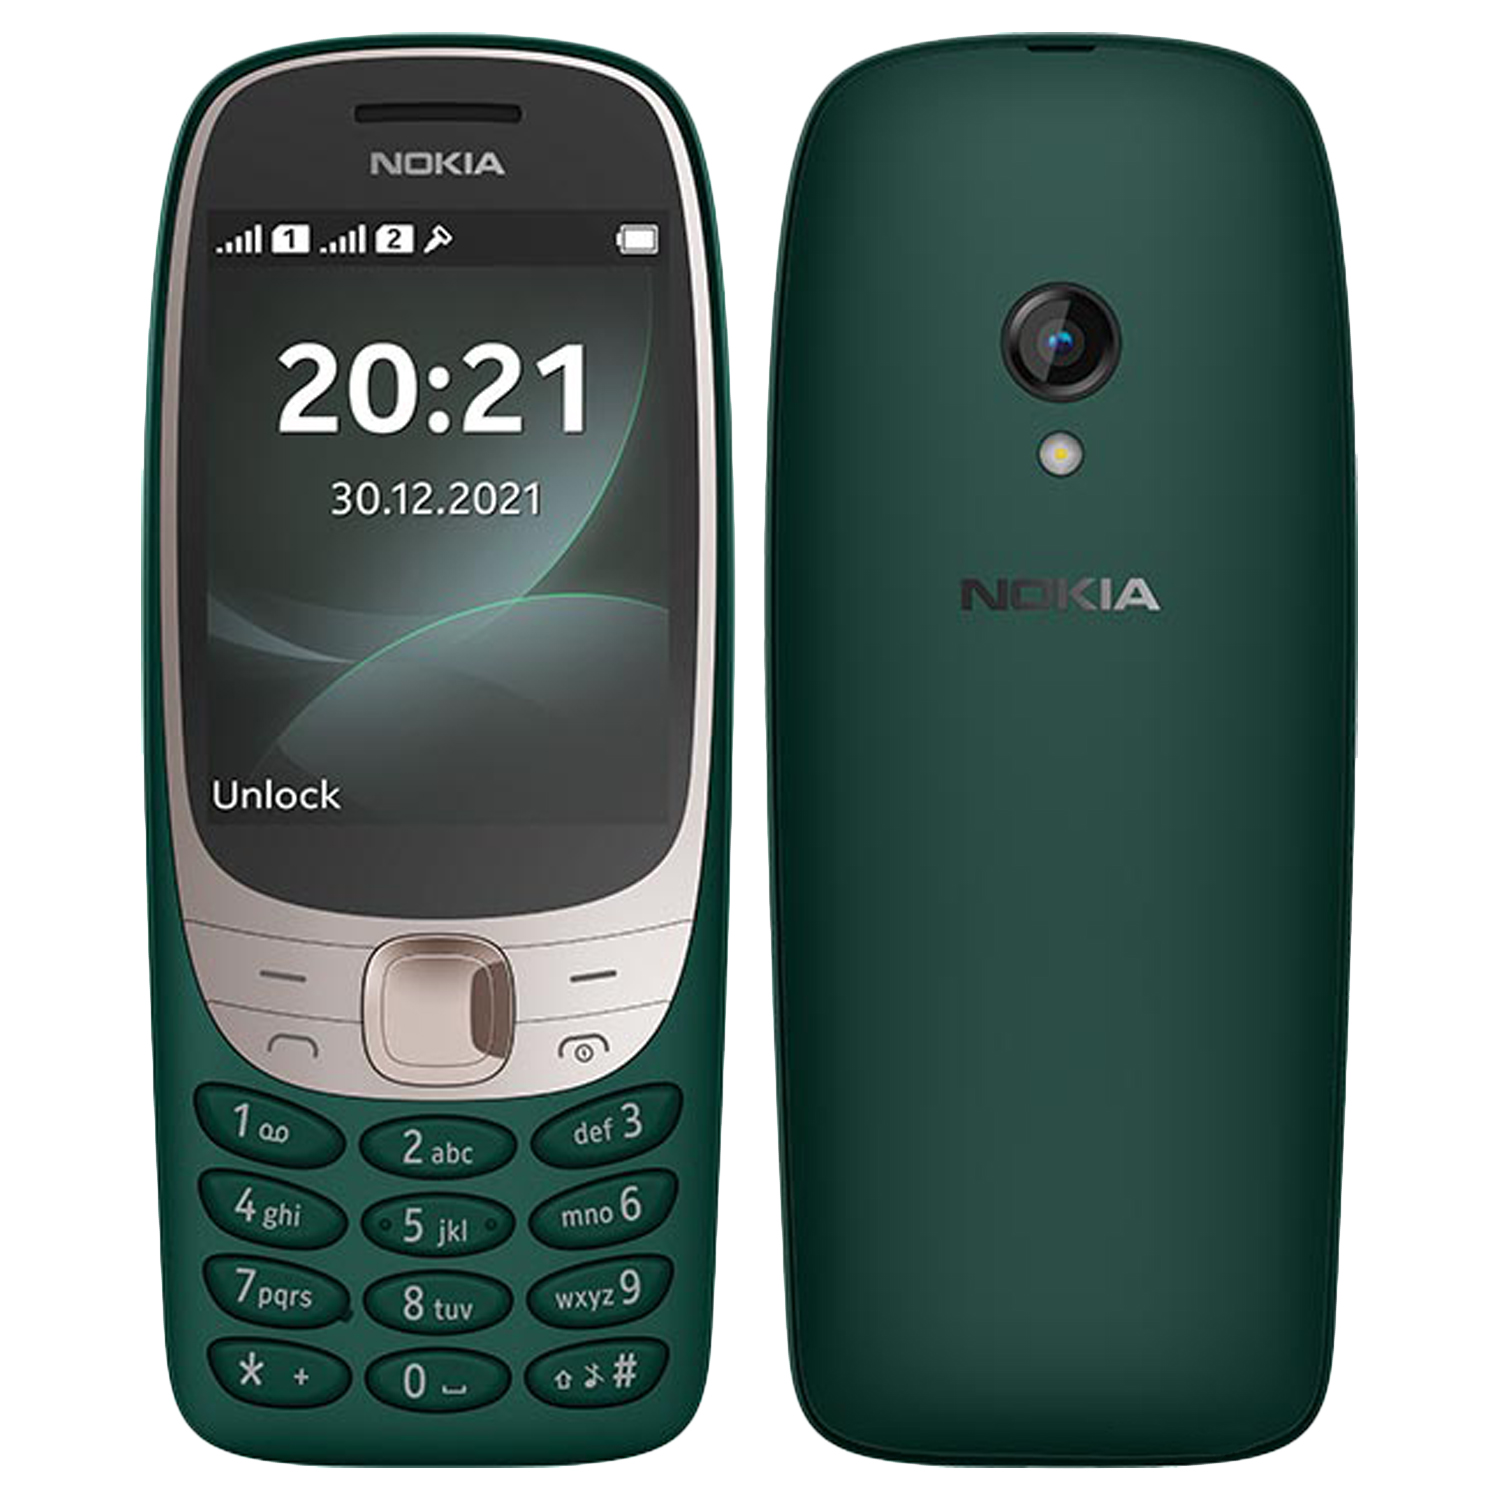 Nokia 6310 (2021) 2